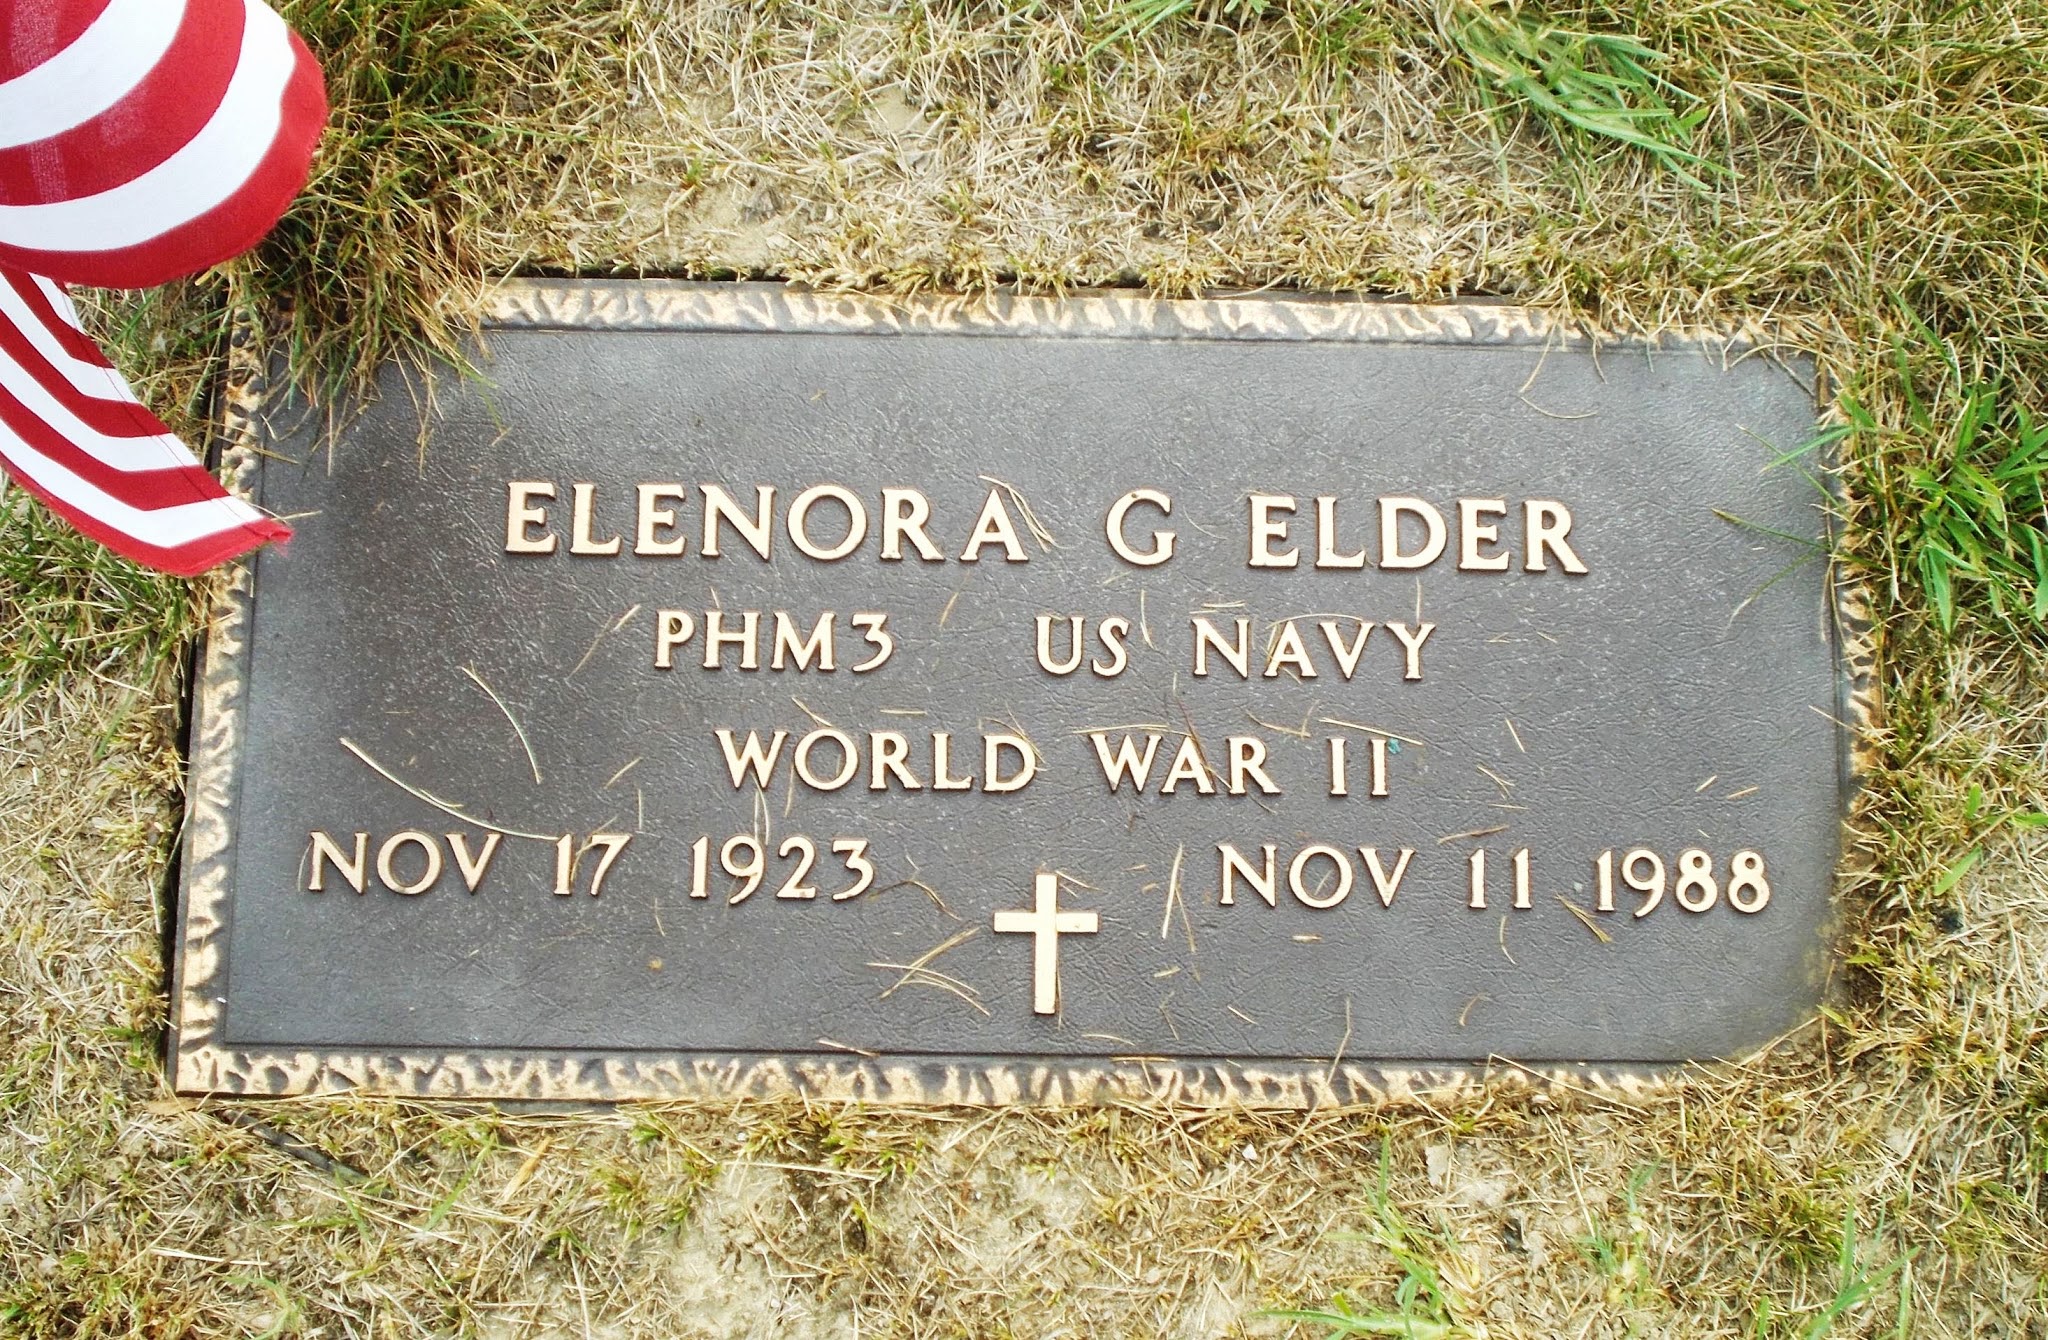 Elenora G Elder